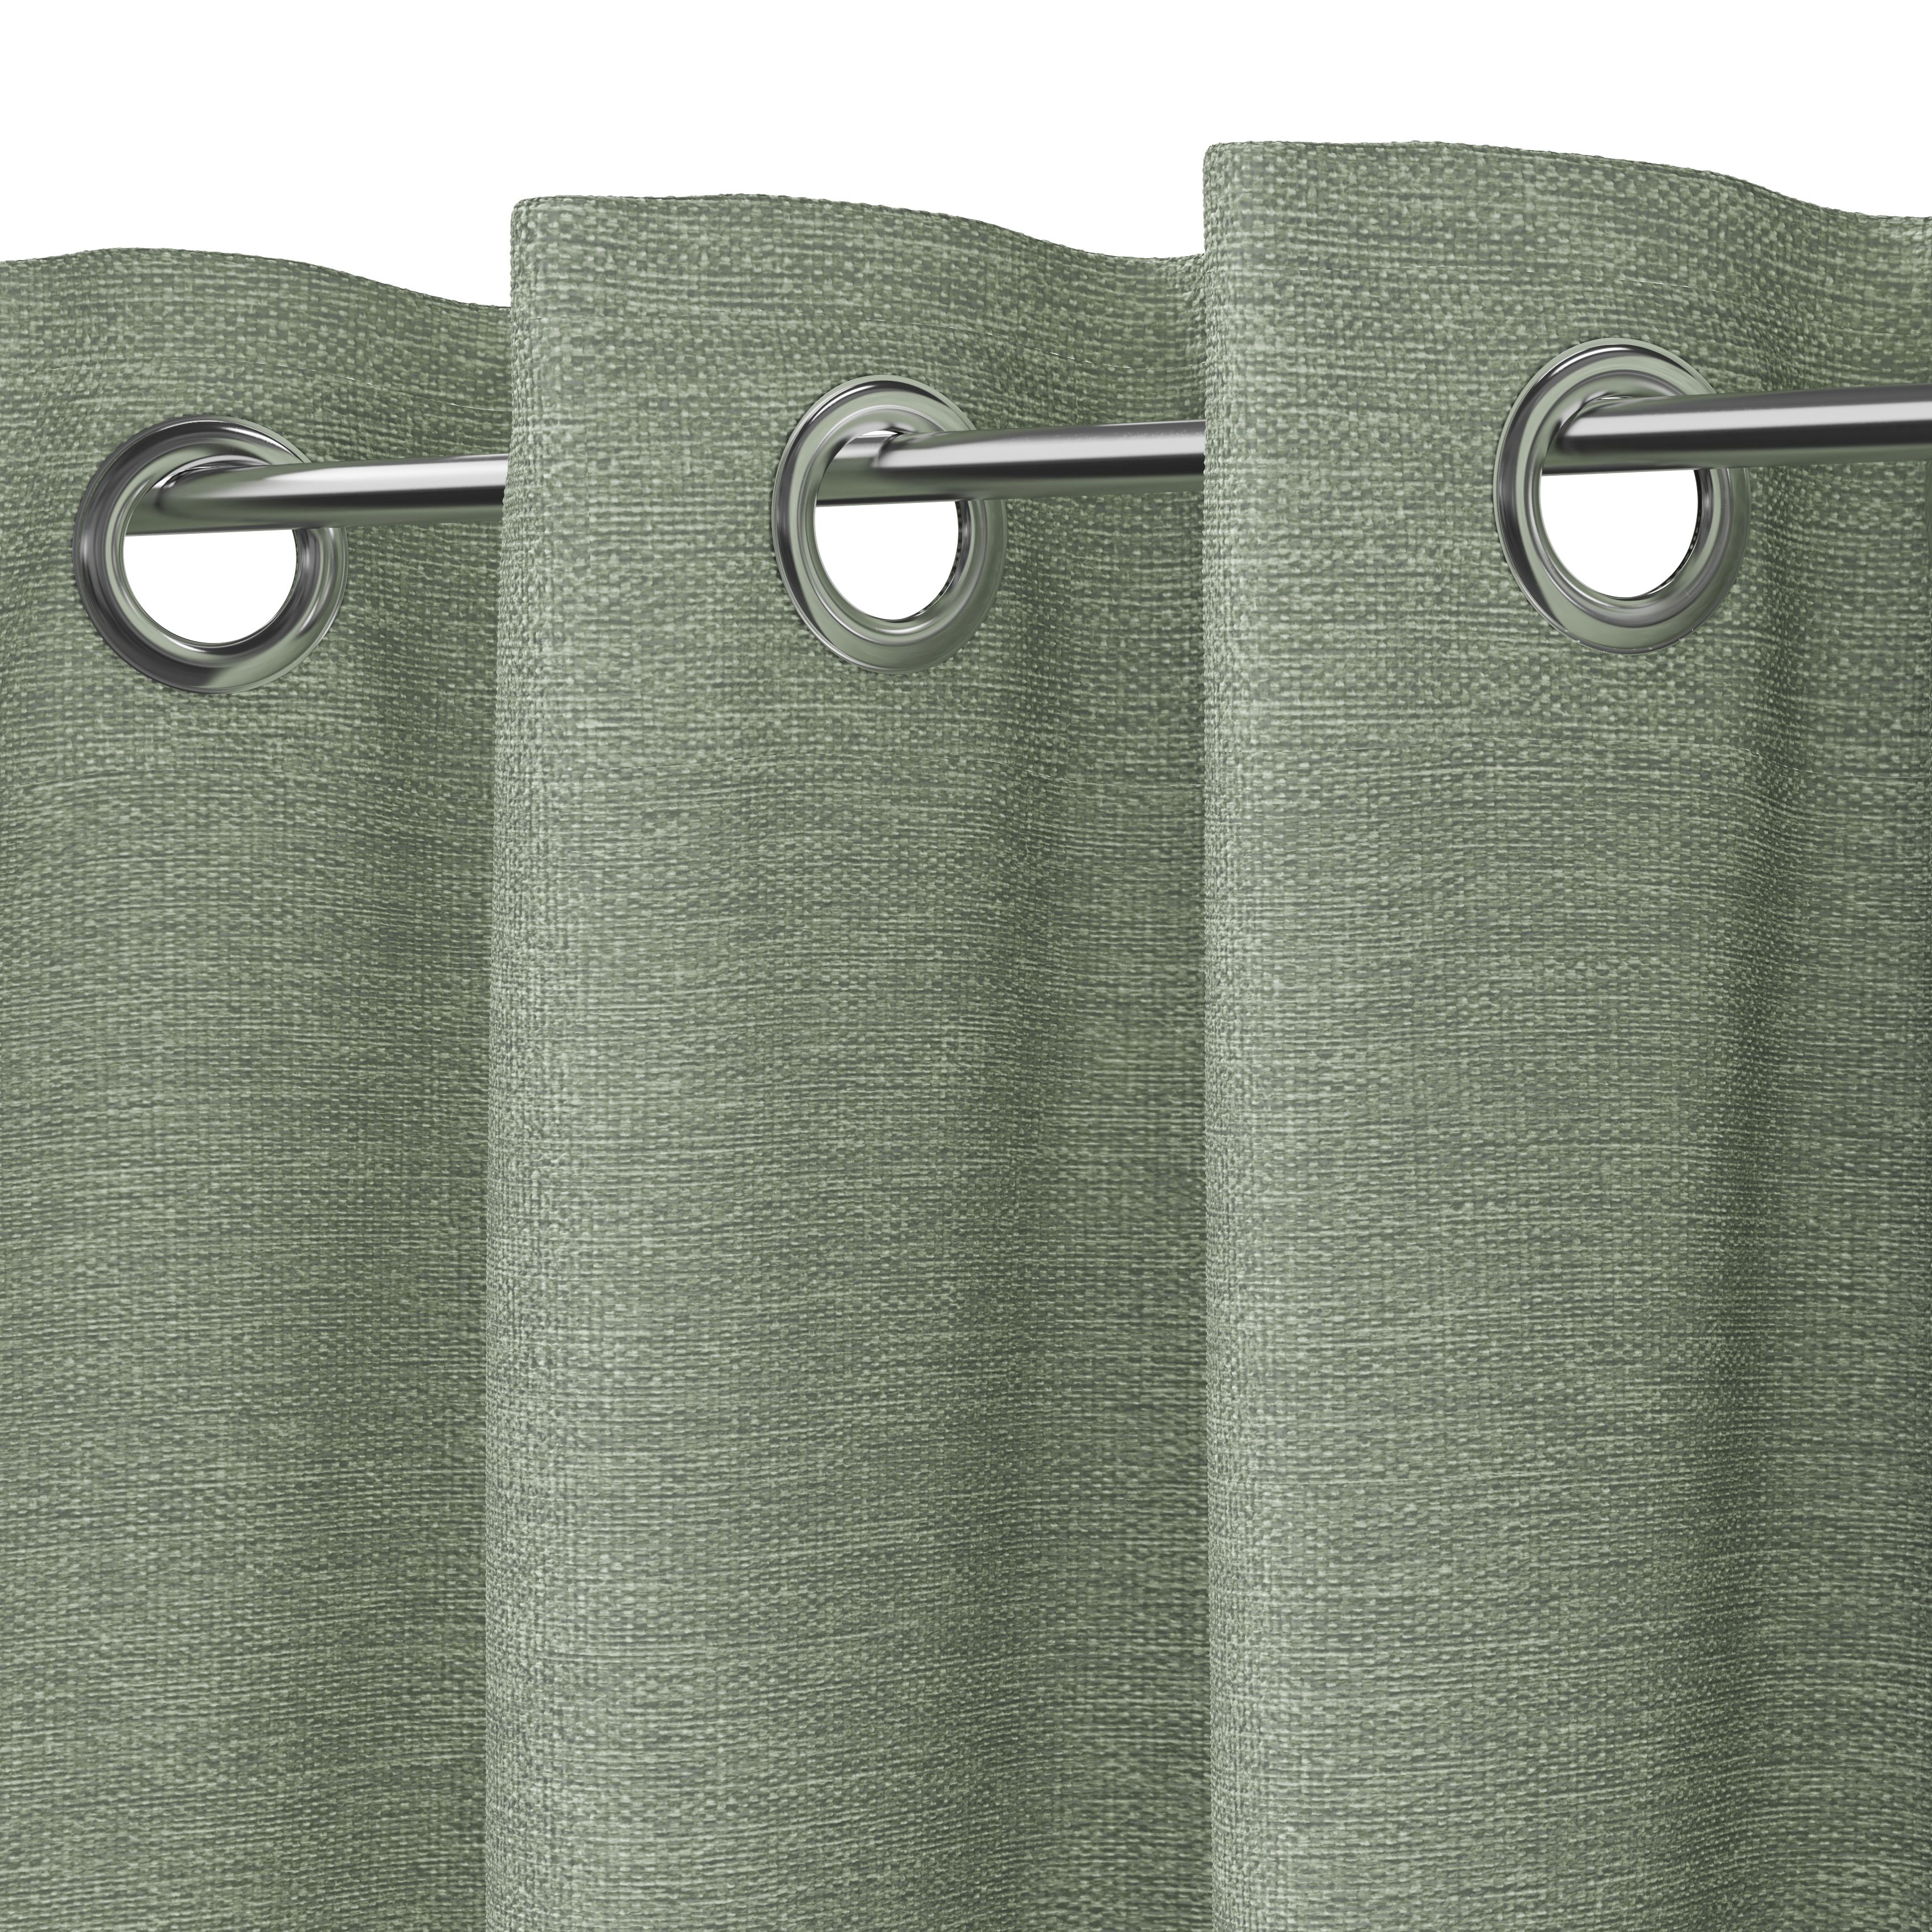 Napour Light green Plain Lined Eyelet Curtain (W)167cm (L)228cm, Pair